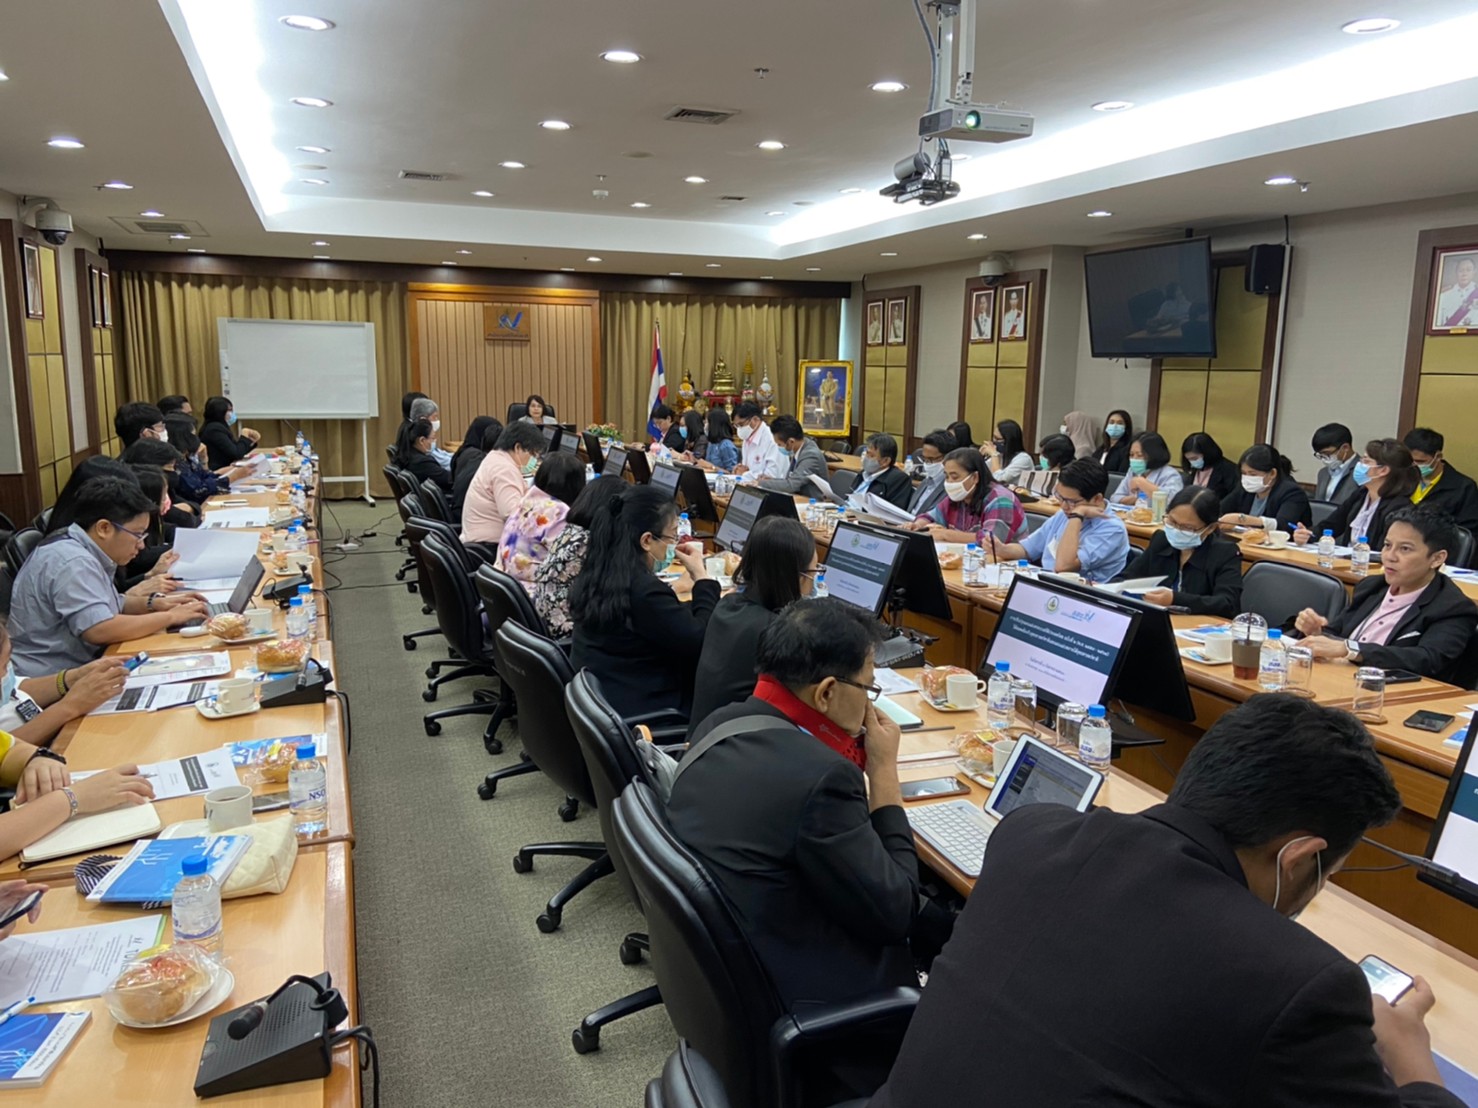 ประชุม “การปรับปรุงแผนแม่บทระบบสถิติประเทศไทย ฉบับที่ 2 (พ.ศ.2559 - 2564) ” ให้สอดคล้องกับยุทธศาสตร์ชาติและแผนแม่บทภายใต้ยุทธศาสตร์ชาติ